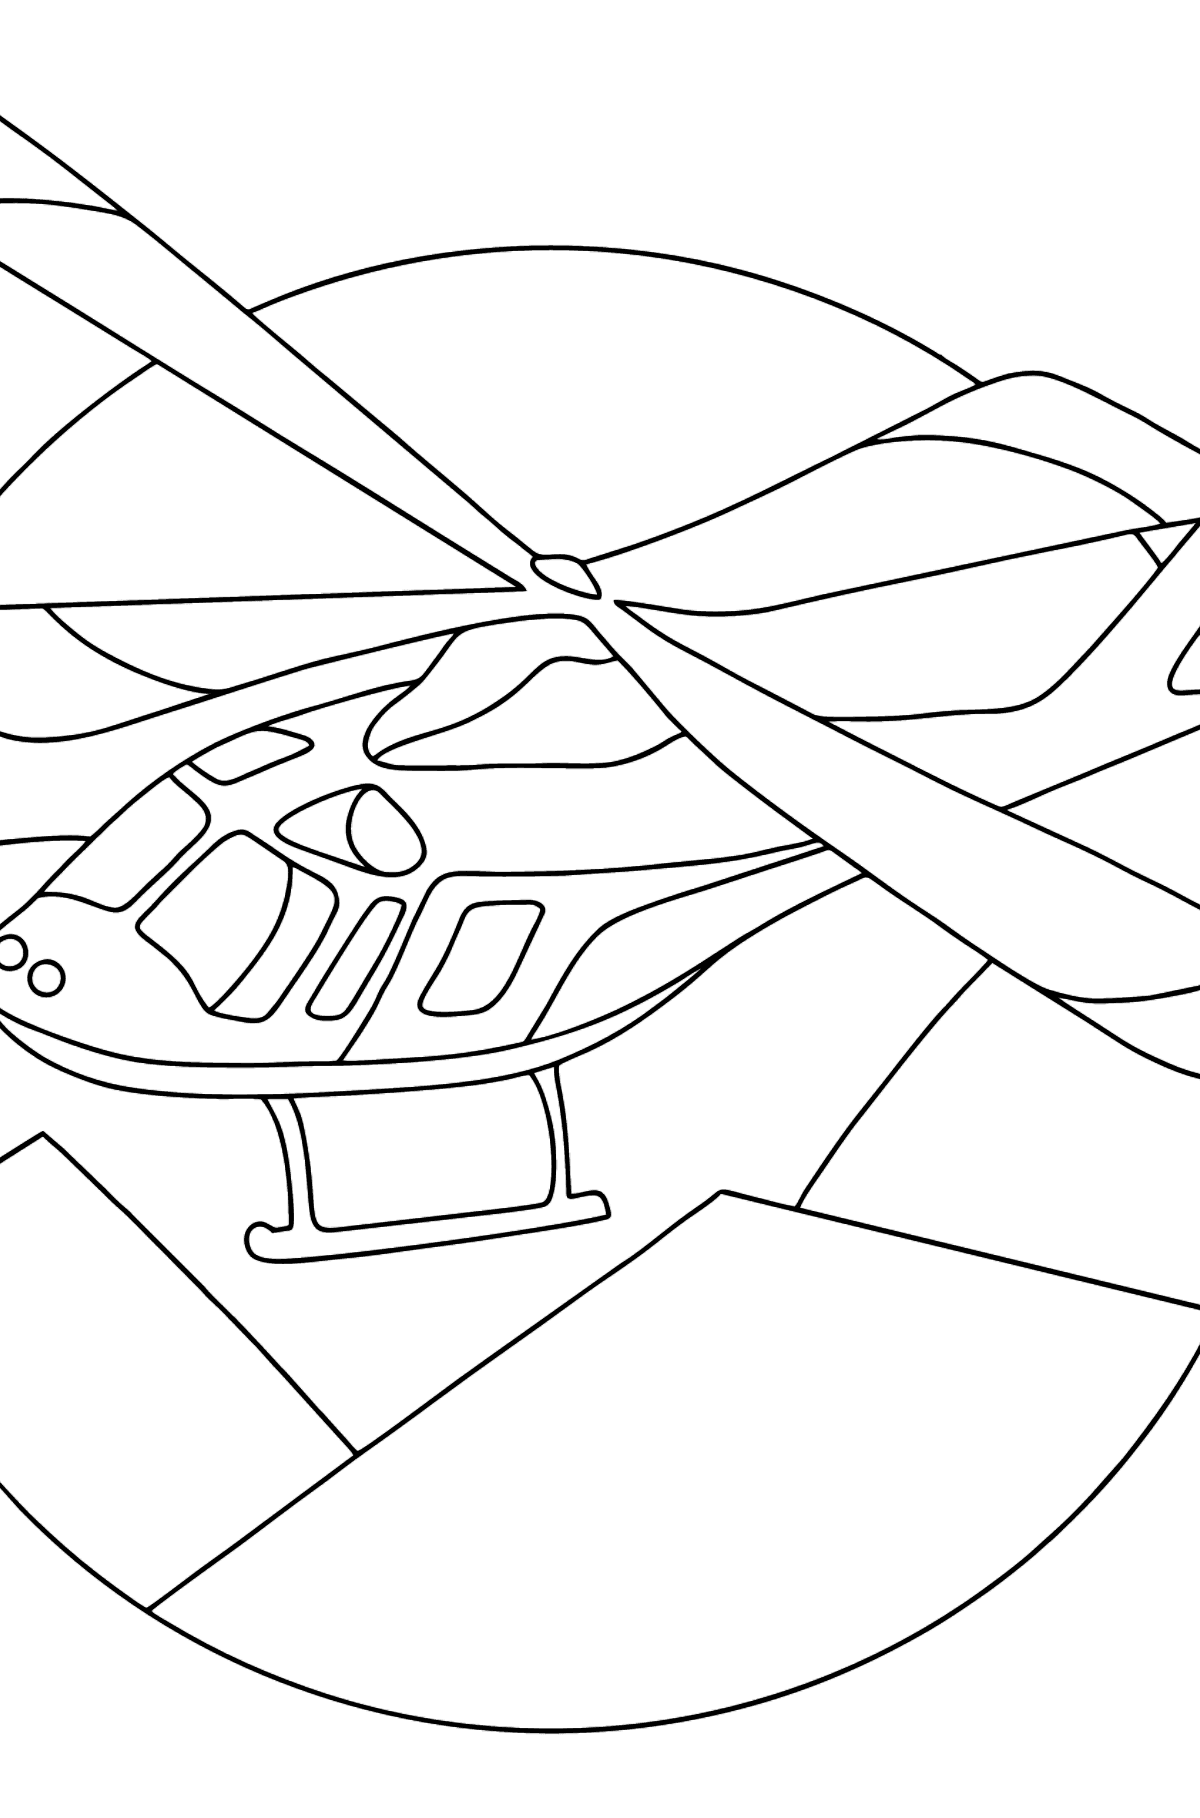 Boyama sayfası spor helikopter - Boyamalar çocuklar için